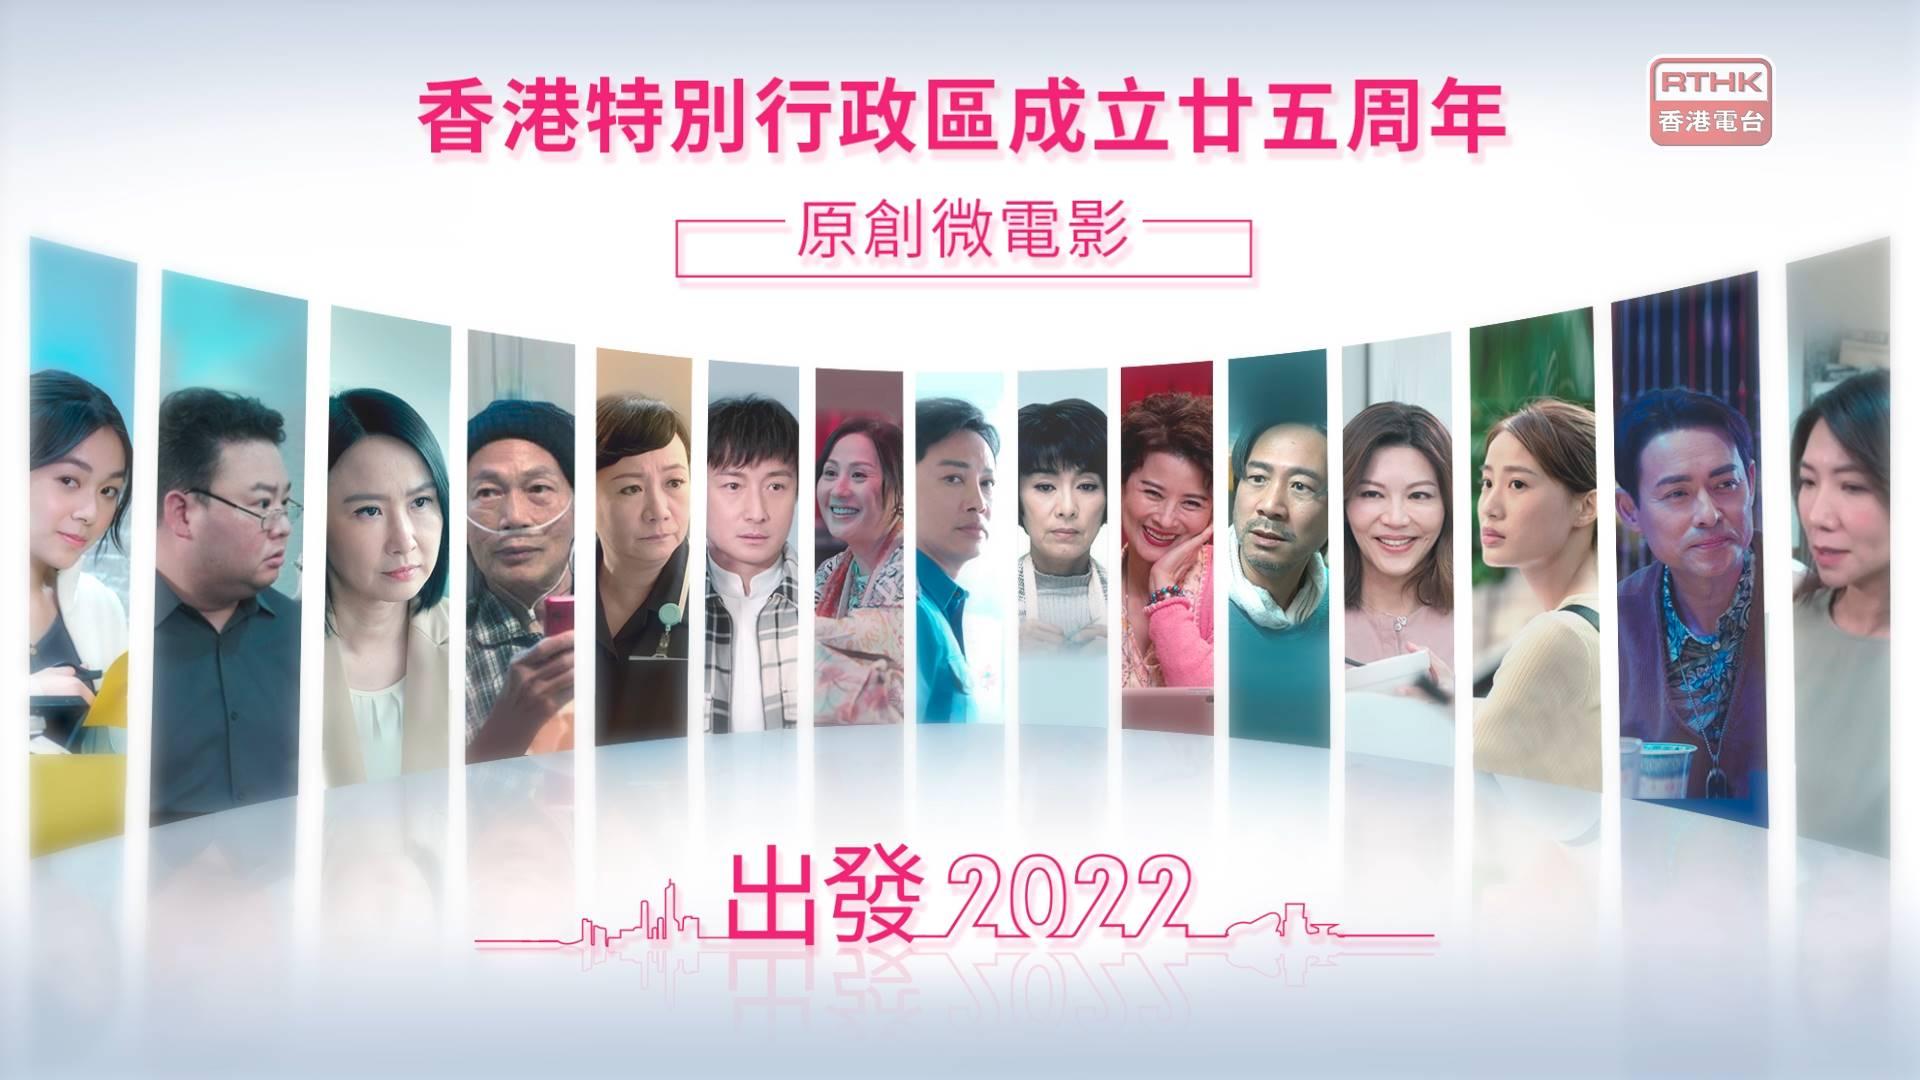 香港特別行政區成立廿五周年原創微電影《出發2022》